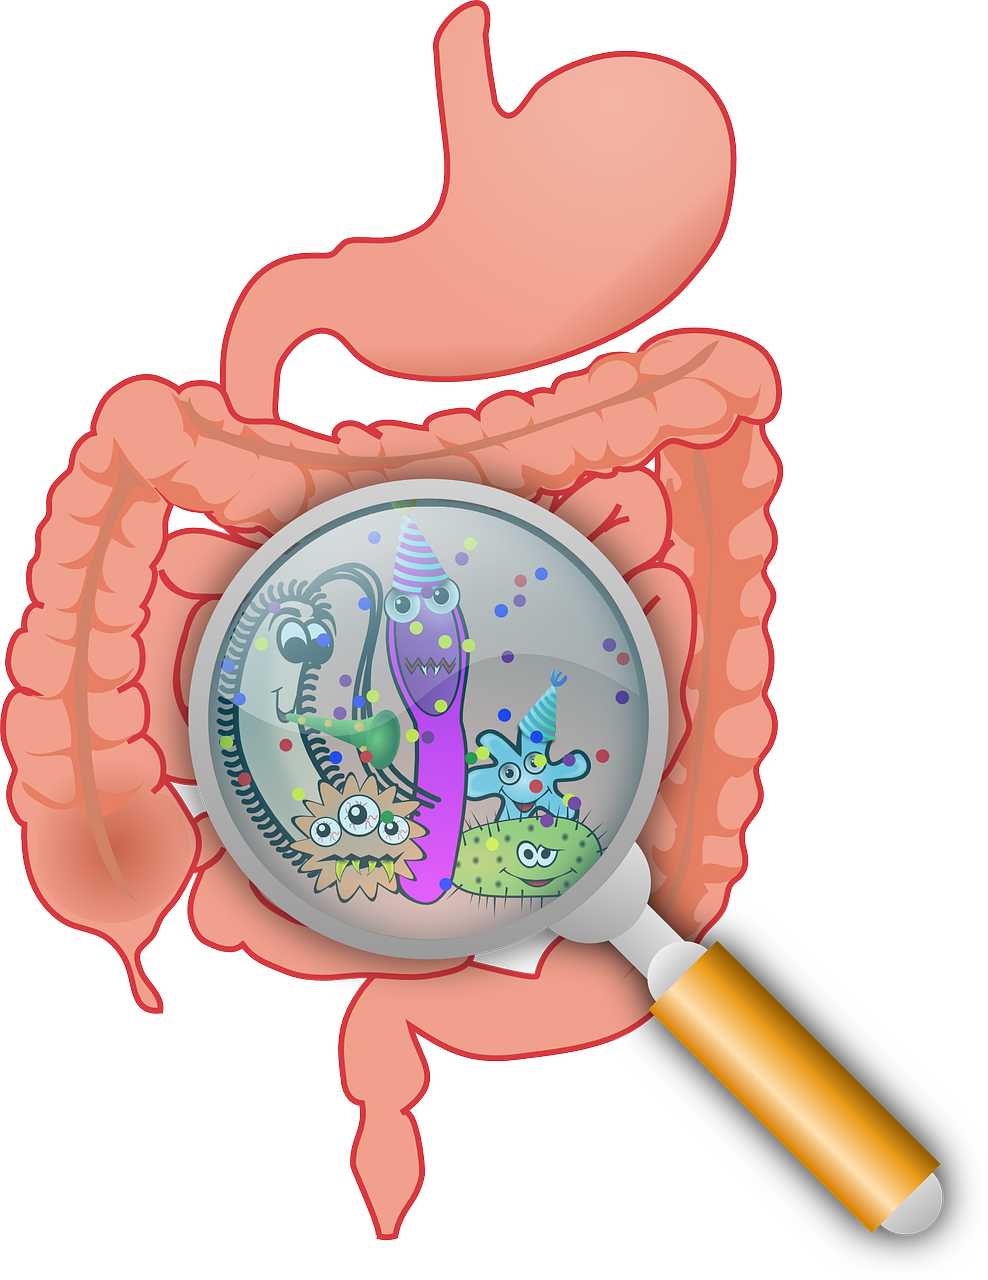 CELL：肠道微生物组变异影响霍乱感染的易感性和抵抗力 